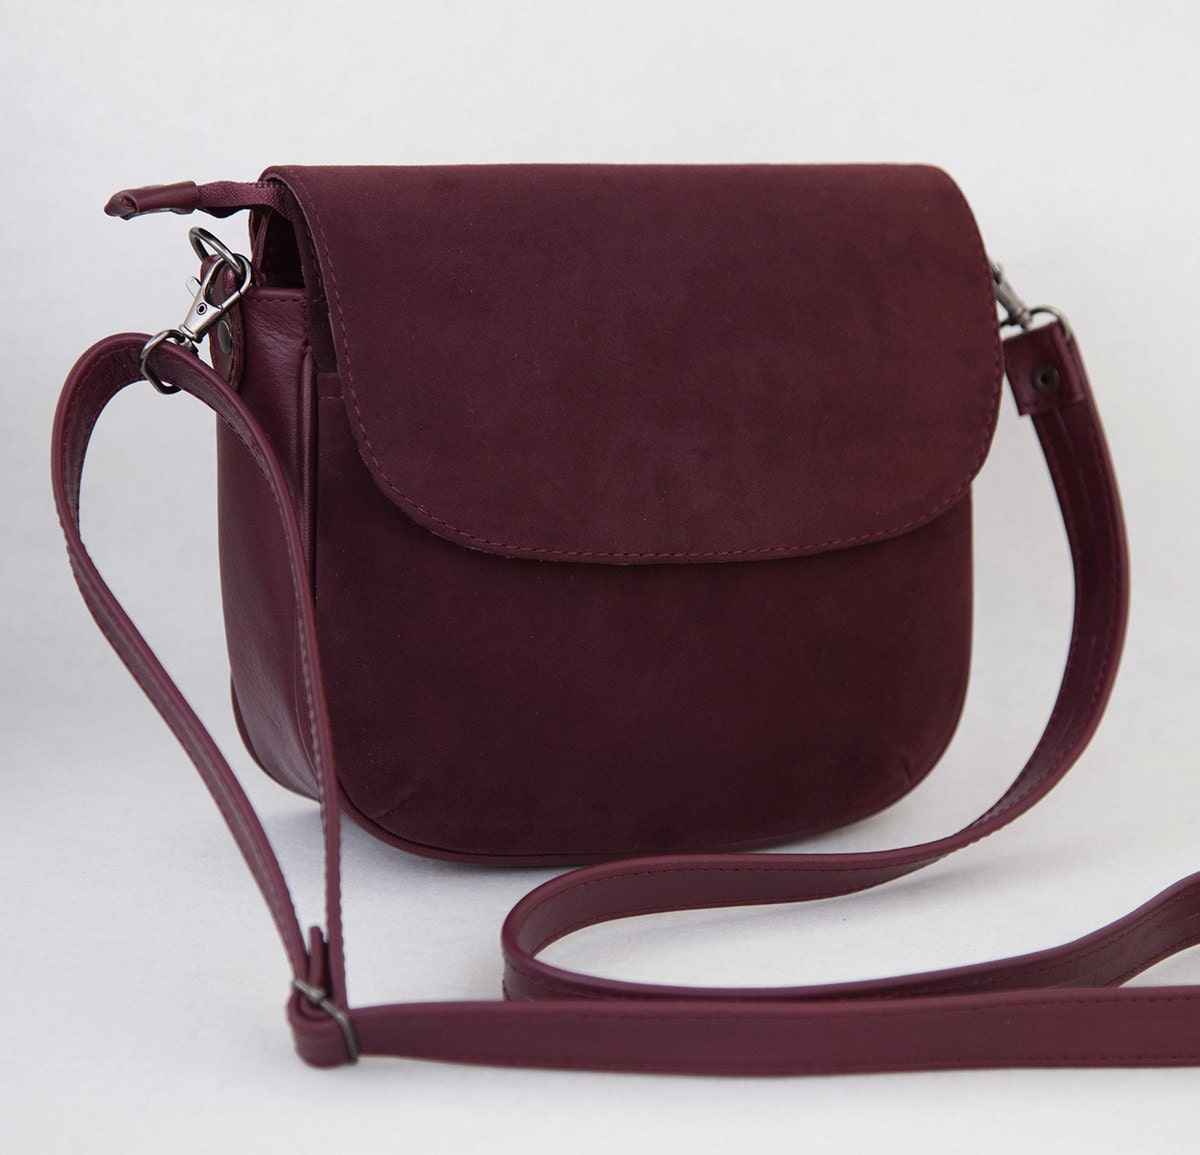 Small Bag Woman Bag Leather Bag Wine-coloured Bag Crossbody Bag ...